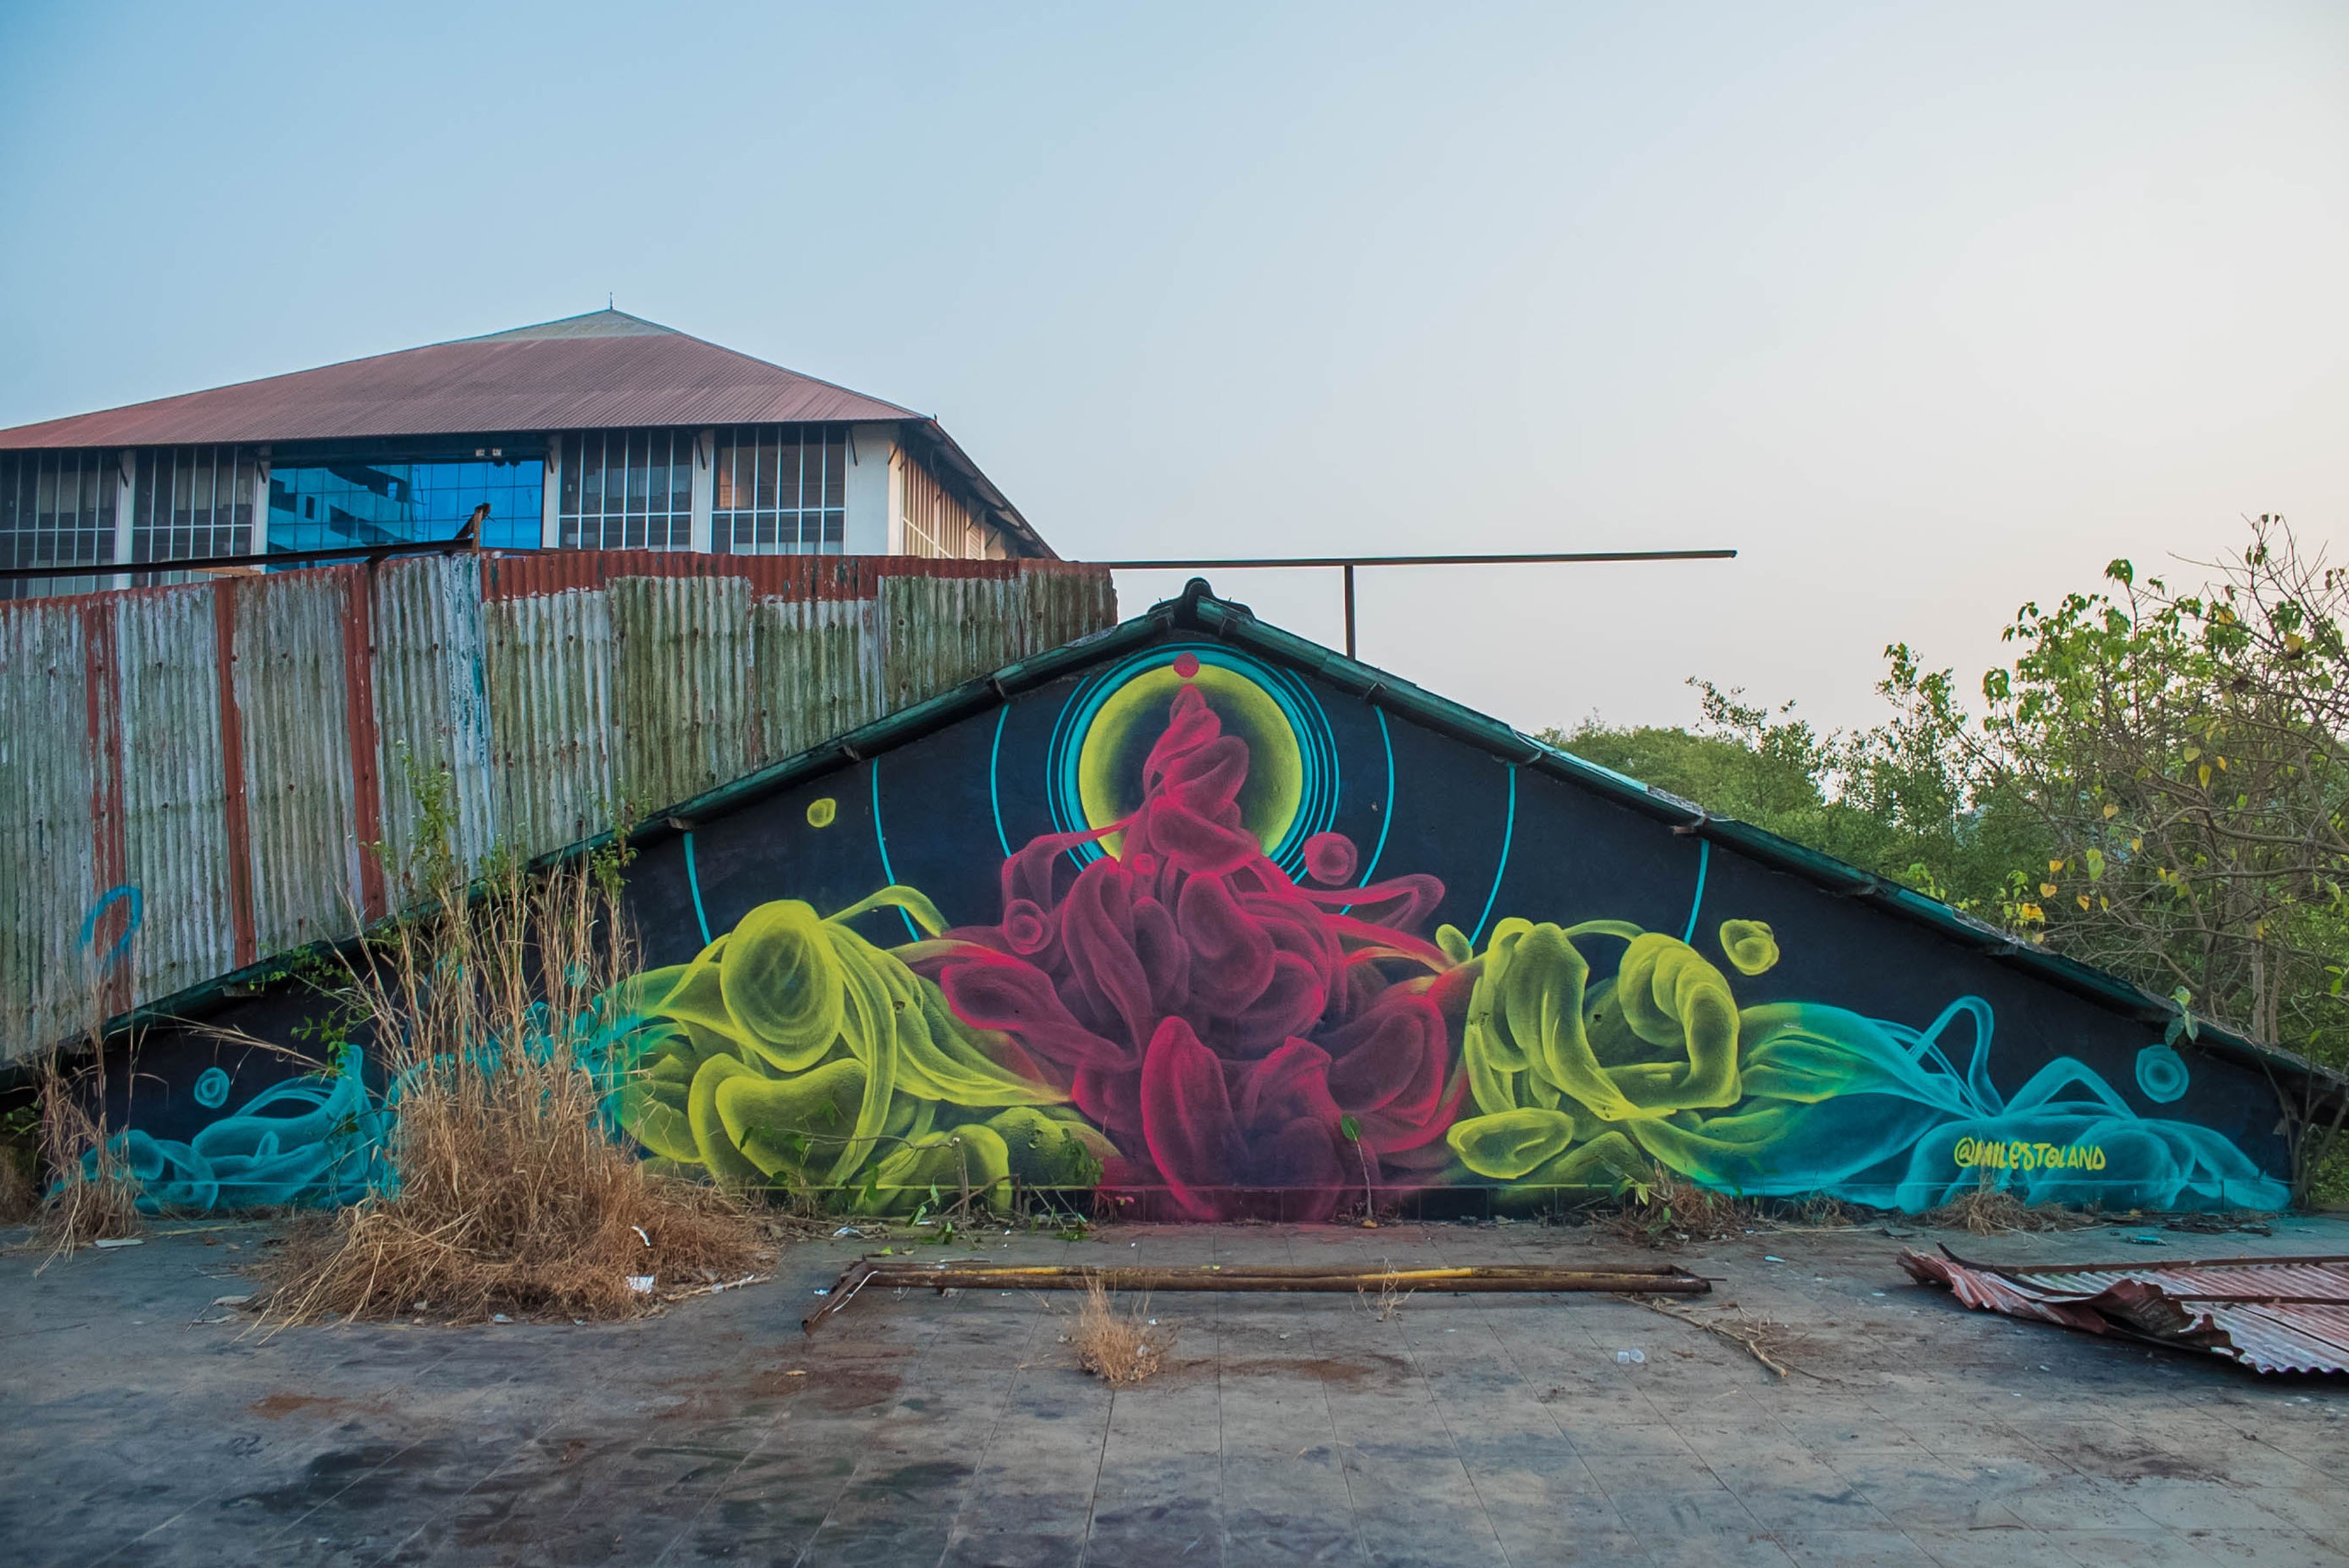 Milestoland Reveals St Art Goa 2018 Pranav Gohil 16